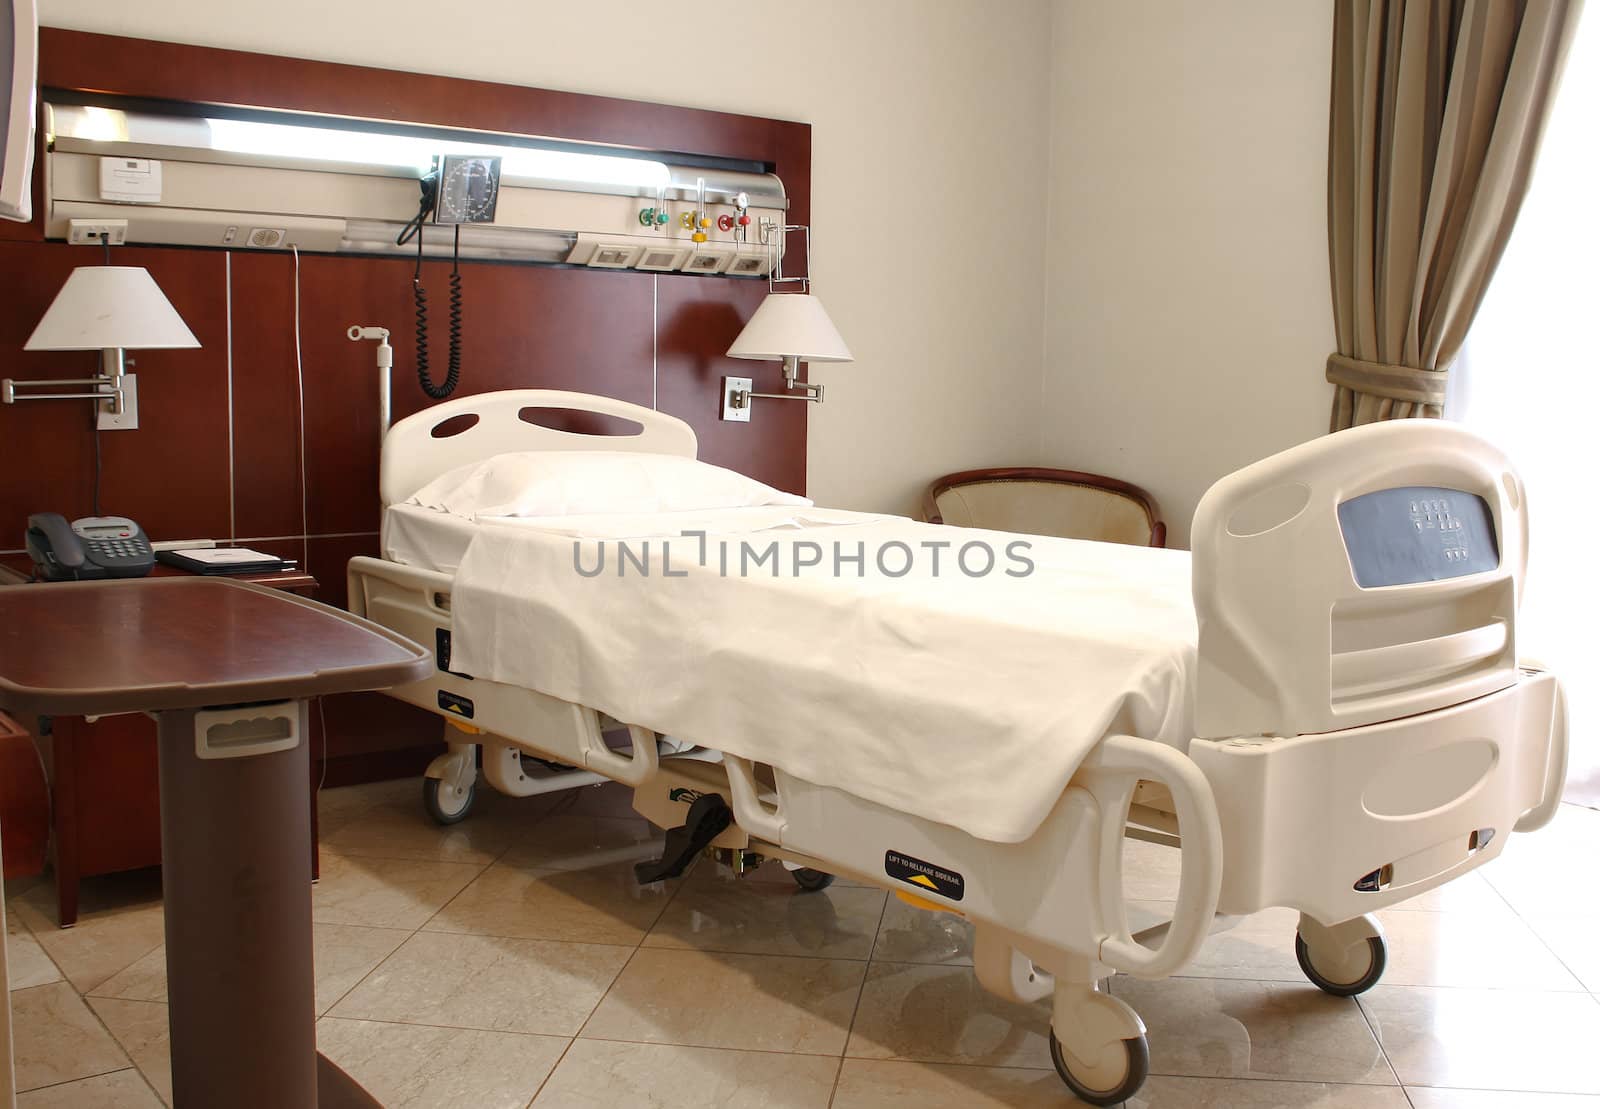 Hospital room, medical image